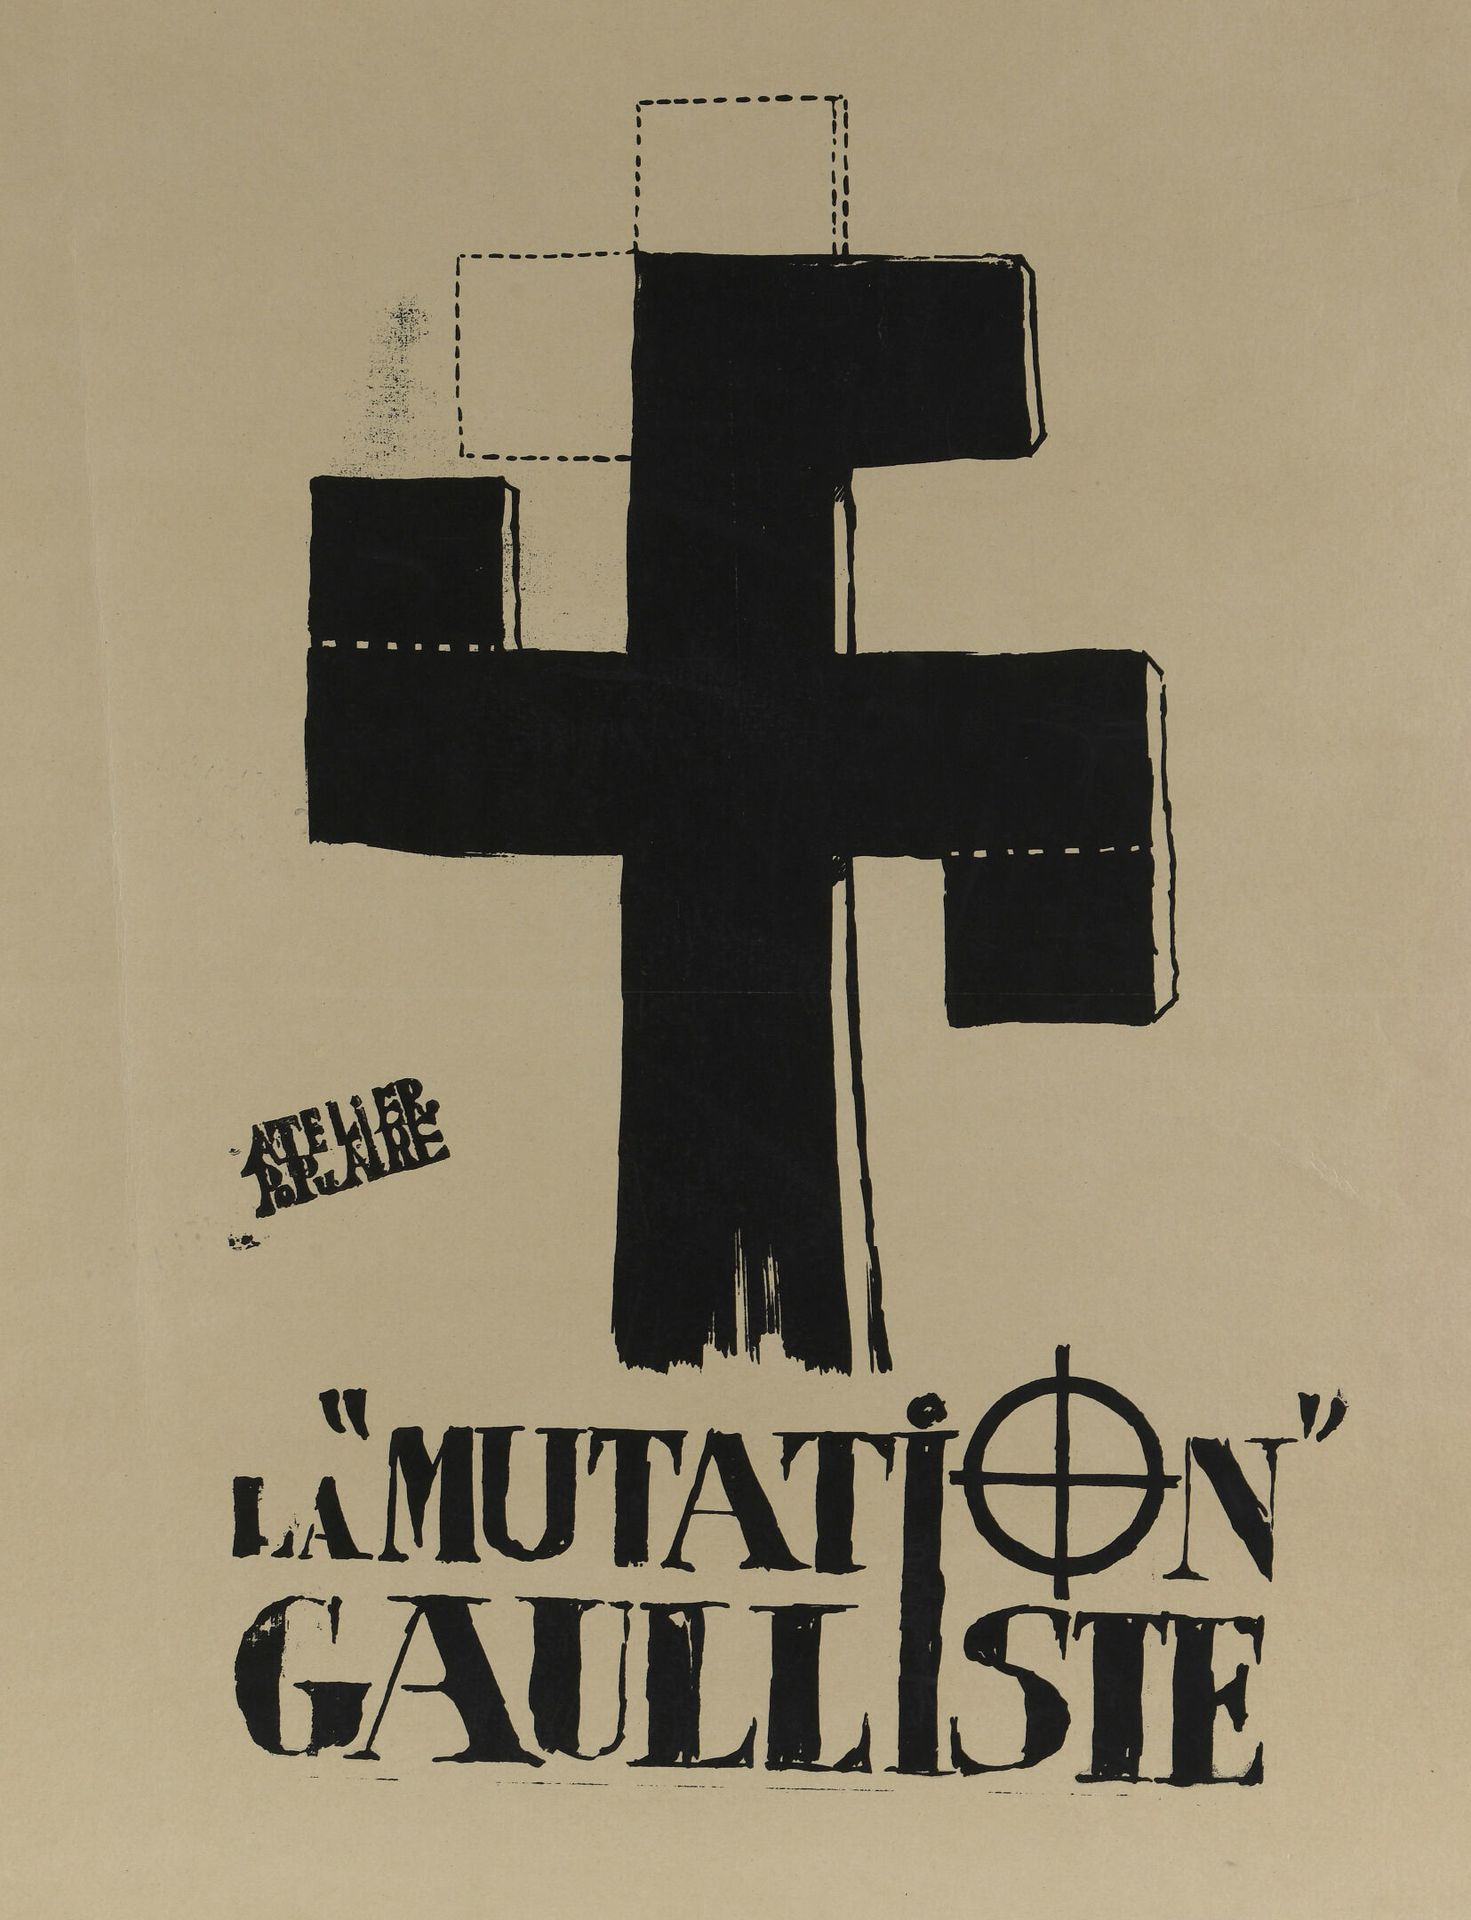 Null [Plakat vom Mai 1968]

Atelier Populaire

Die gaullistische Mutation

Schwa&hellip;